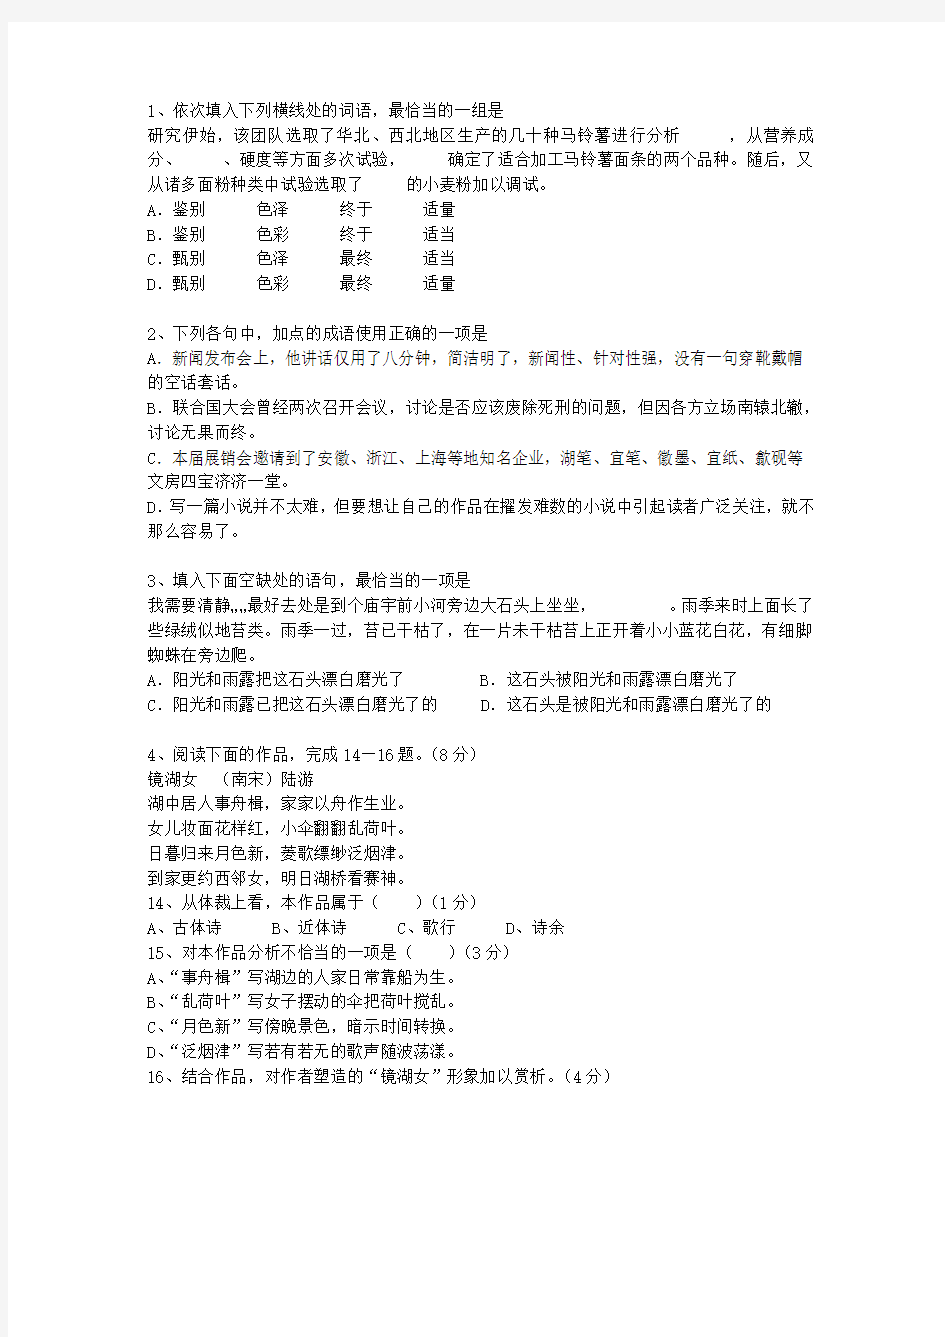 2010江西省高考语文试卷答案、考点详解以及2016预测考试题库